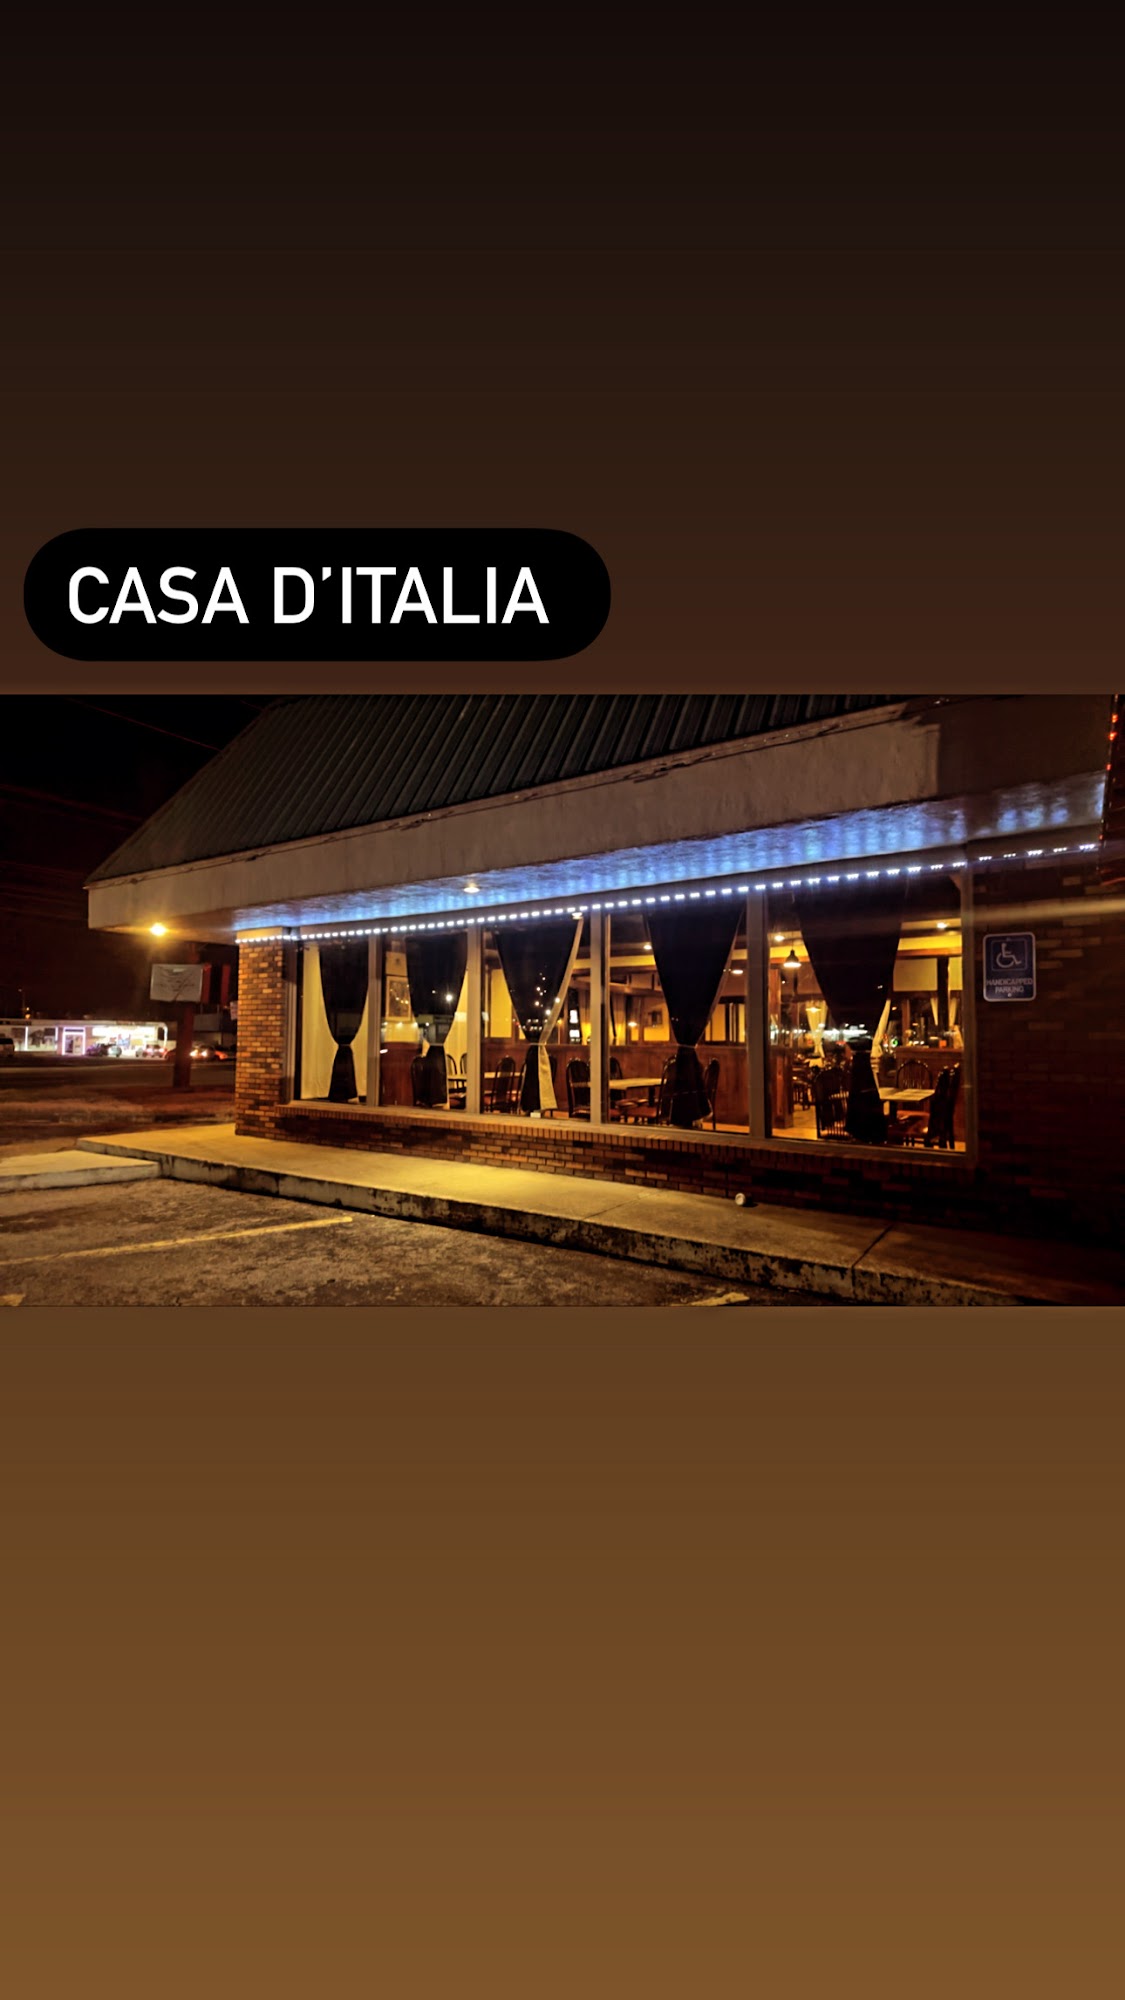 CASA D’ITALIA 1345 Fort Campbell Blvd, Clarksville, TN 37042